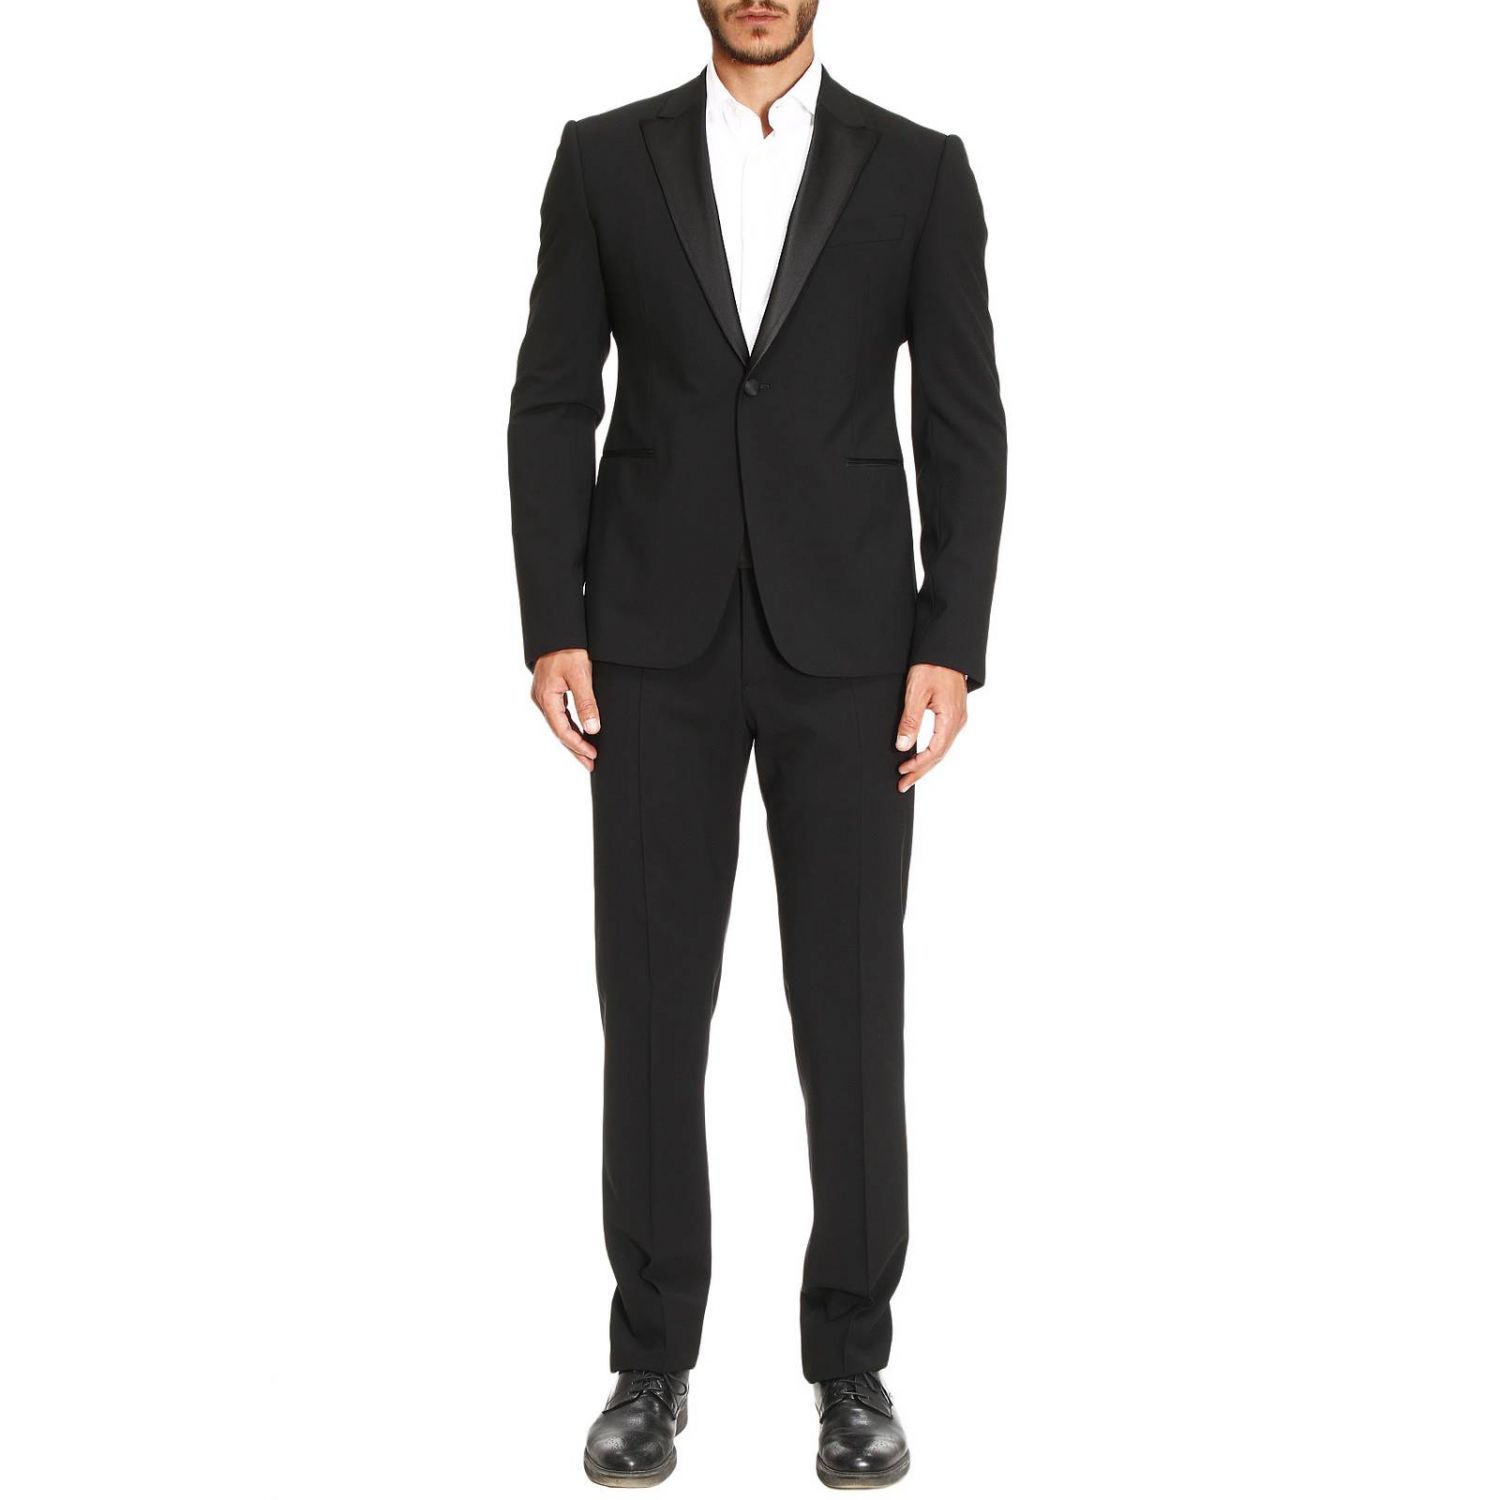 Armani Collezioni - Suit Suit Men Armani Collezioni - black, Men's